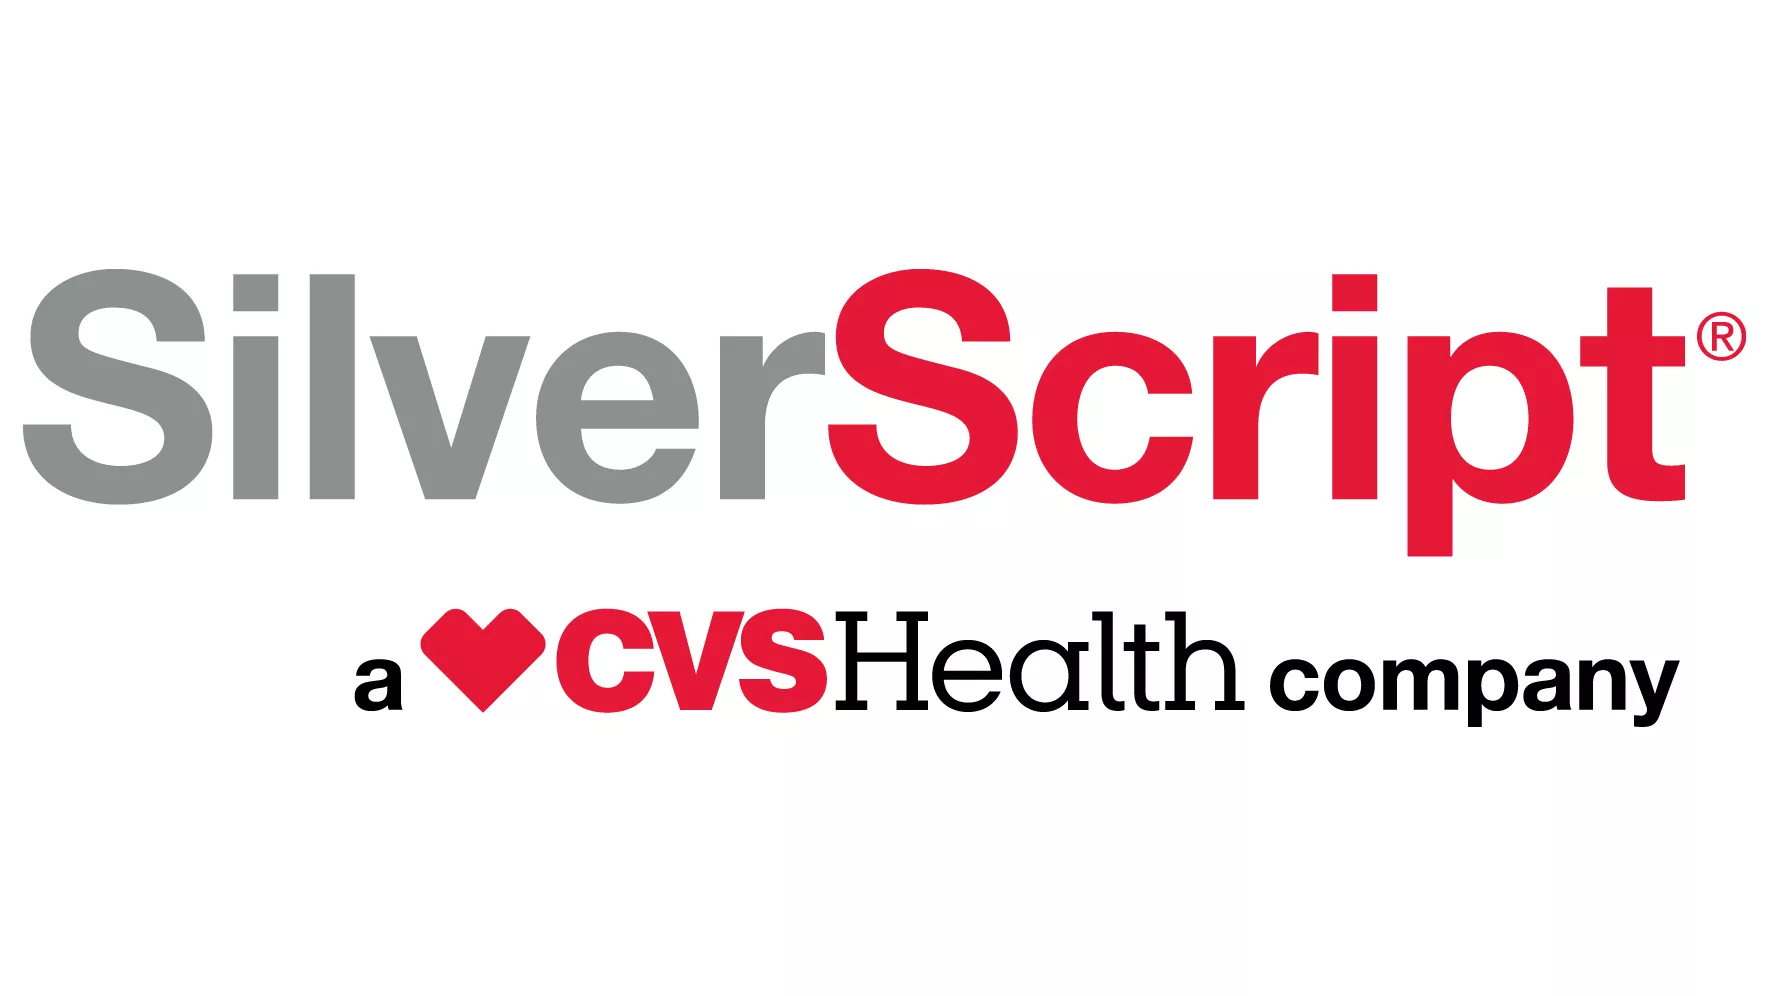 Silverscript a CVS health company